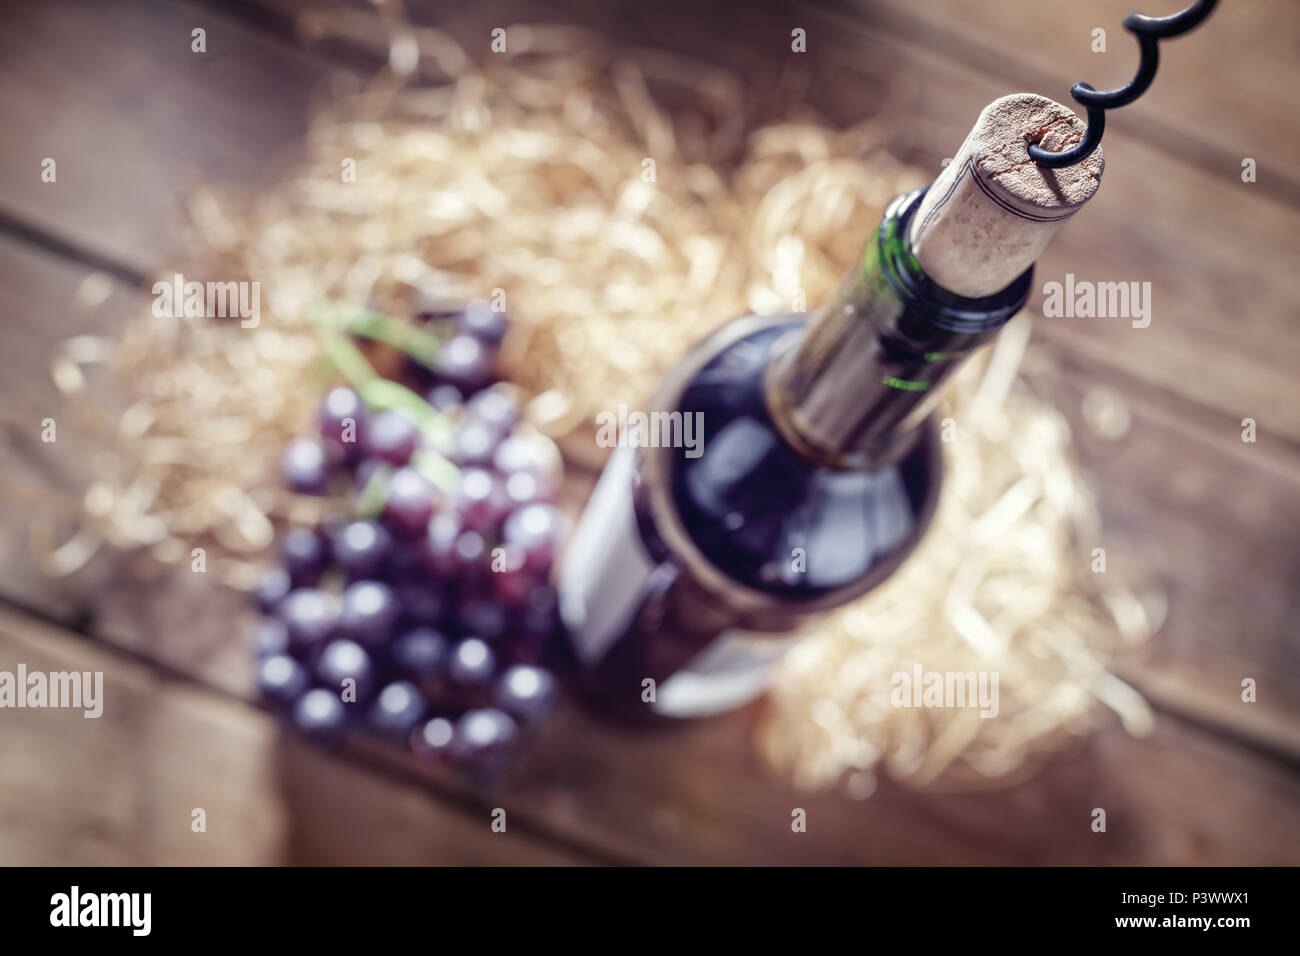 Bouteille de vin, des raisins, de Cork et de tire-bouchon on wooden table Banque D'Images